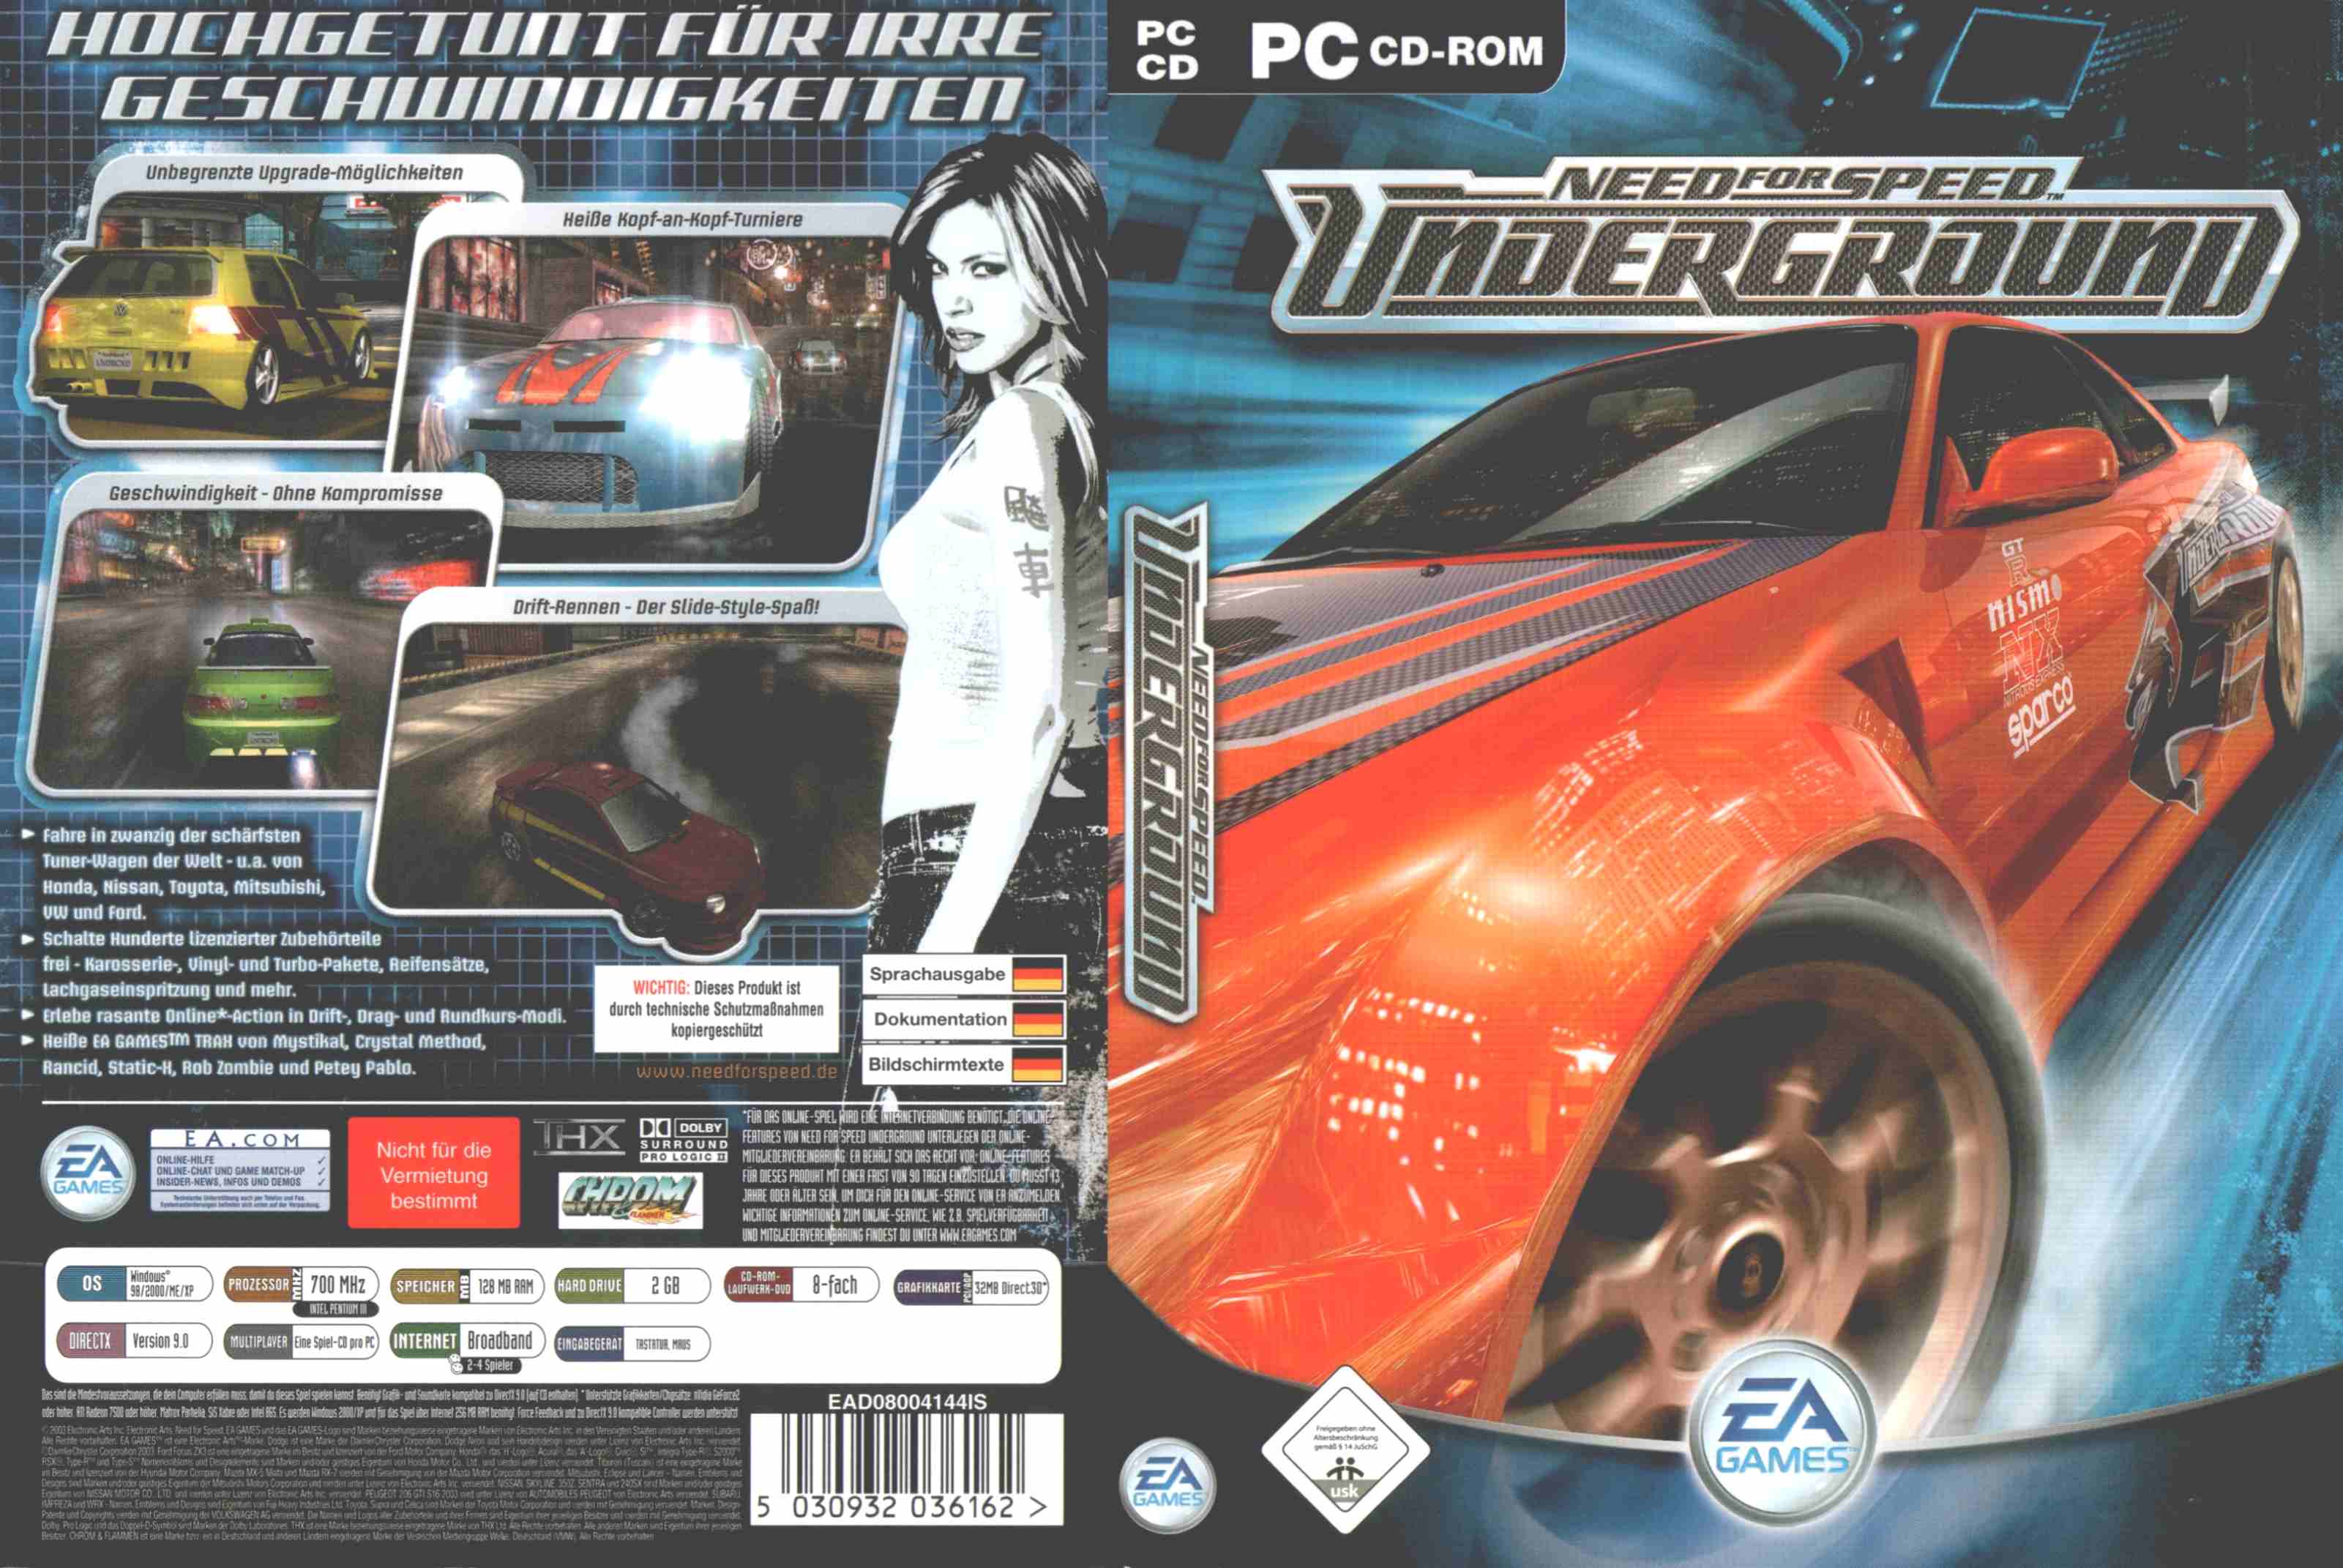 Песня из игры андеграунд. Need for Speed Underground диск. Need for Speed Underground 2 диск PC. NFS Underground 1 диски. Need for Speed 2003 обложка.